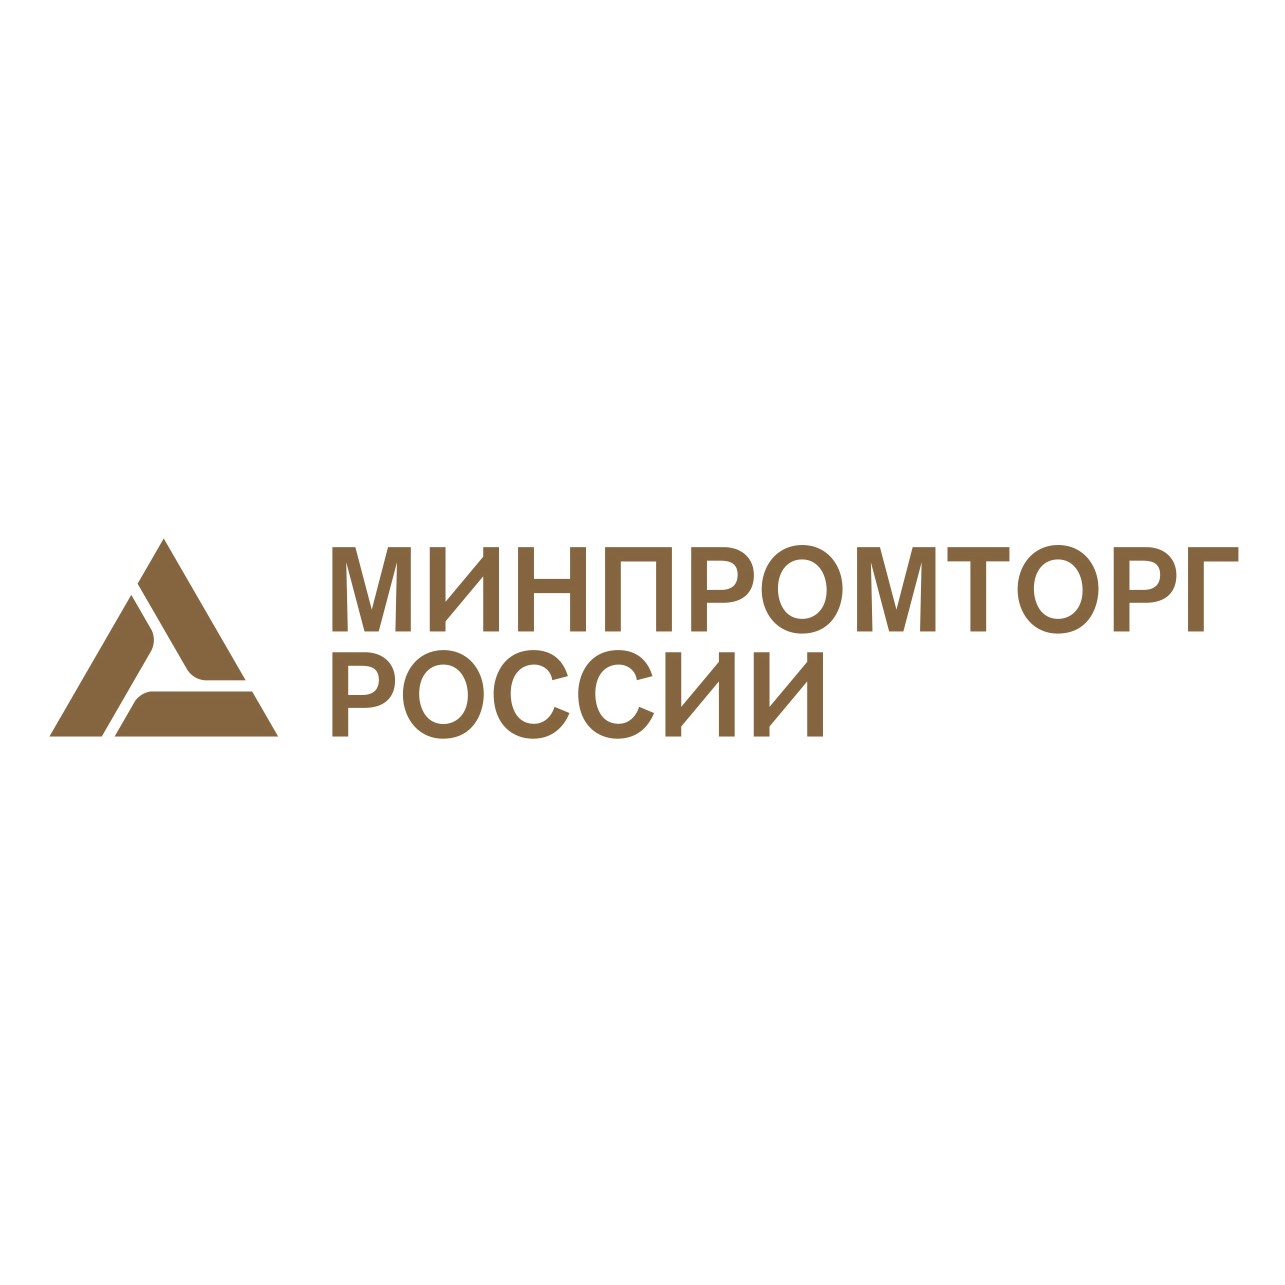 логотип Министерства промышленности и торговли РФ